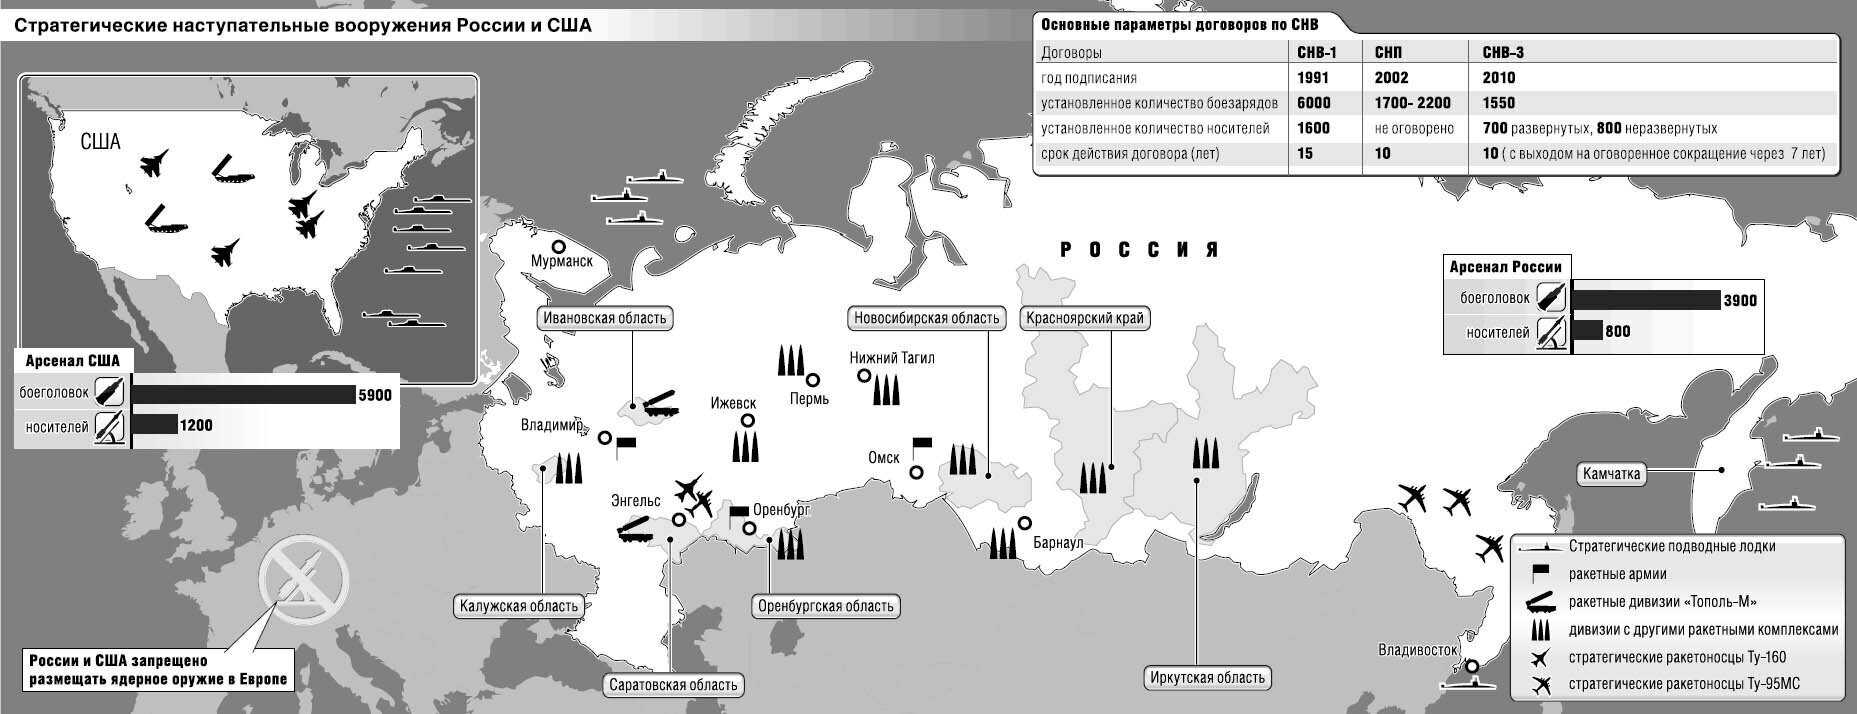 Цели ударов по россии. Карта ядерного вооружения России. Карта ядерного вооружения США. Карта размещения ядерного оружия НАТО В Европе. Расположение ядерного оружия в РФ.